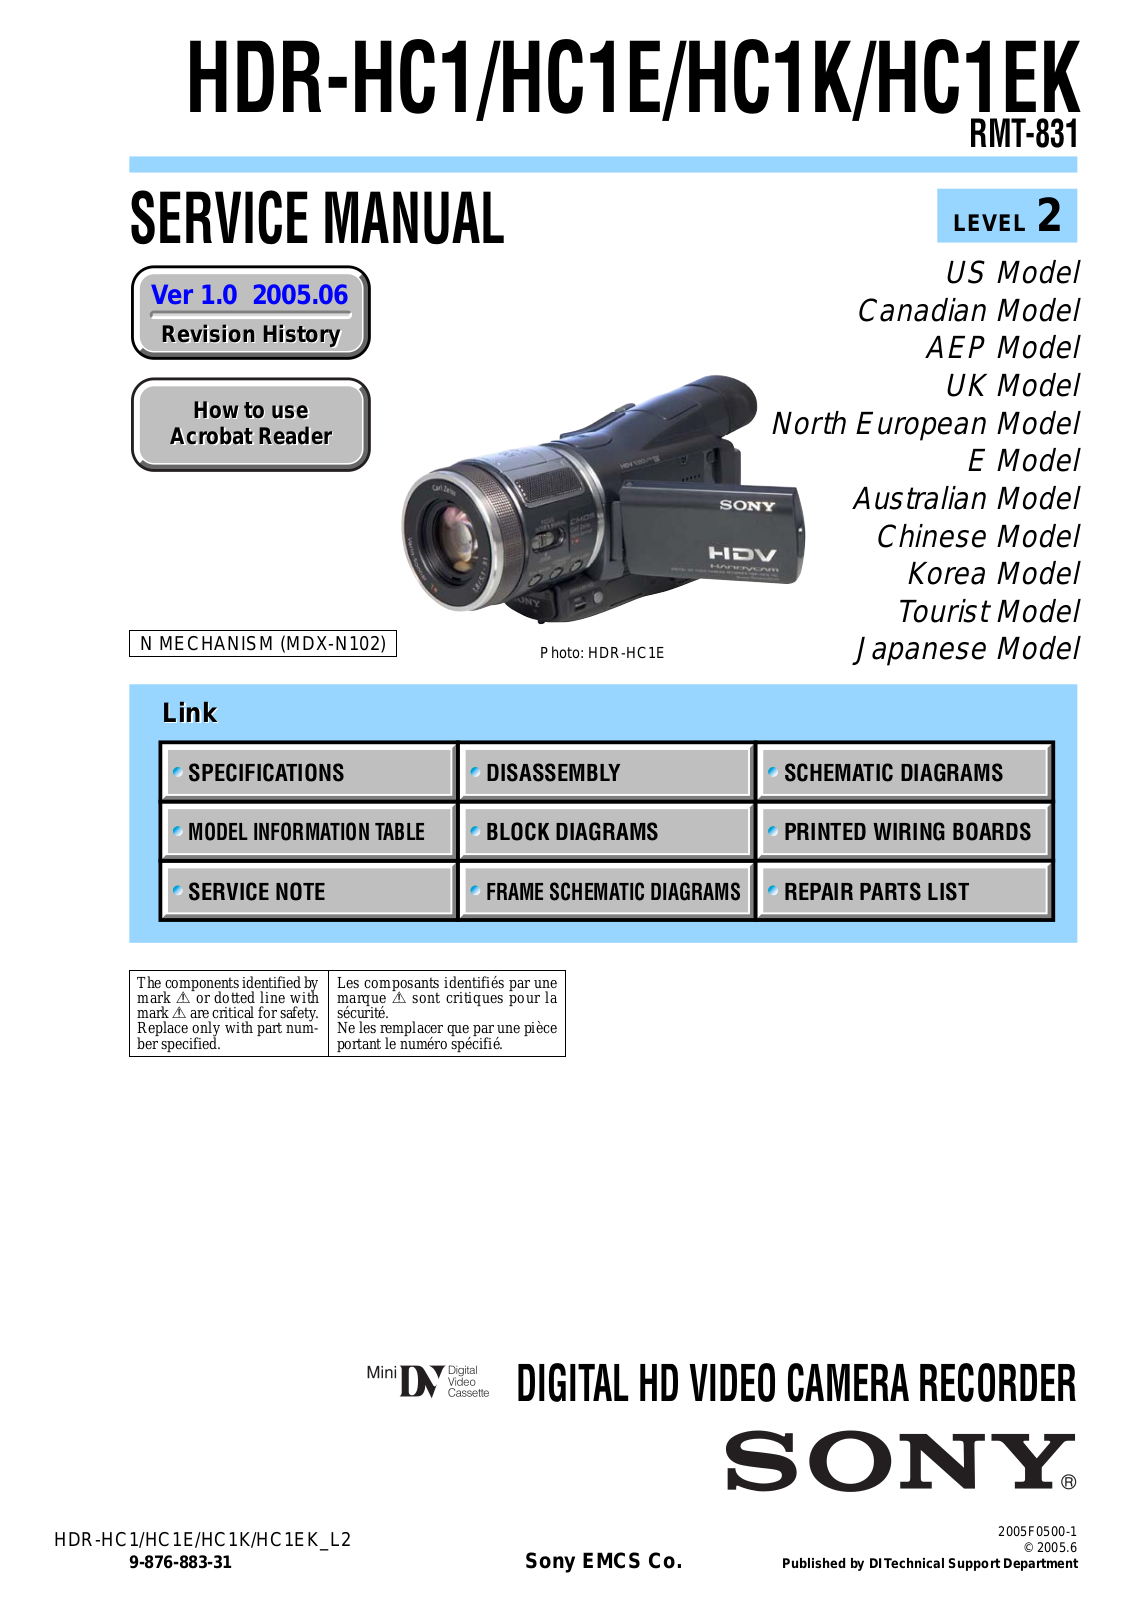 Sony HDR-HC1K, HDR-HC1EK, HDR-HC1E, HDR-HC1 User Manual